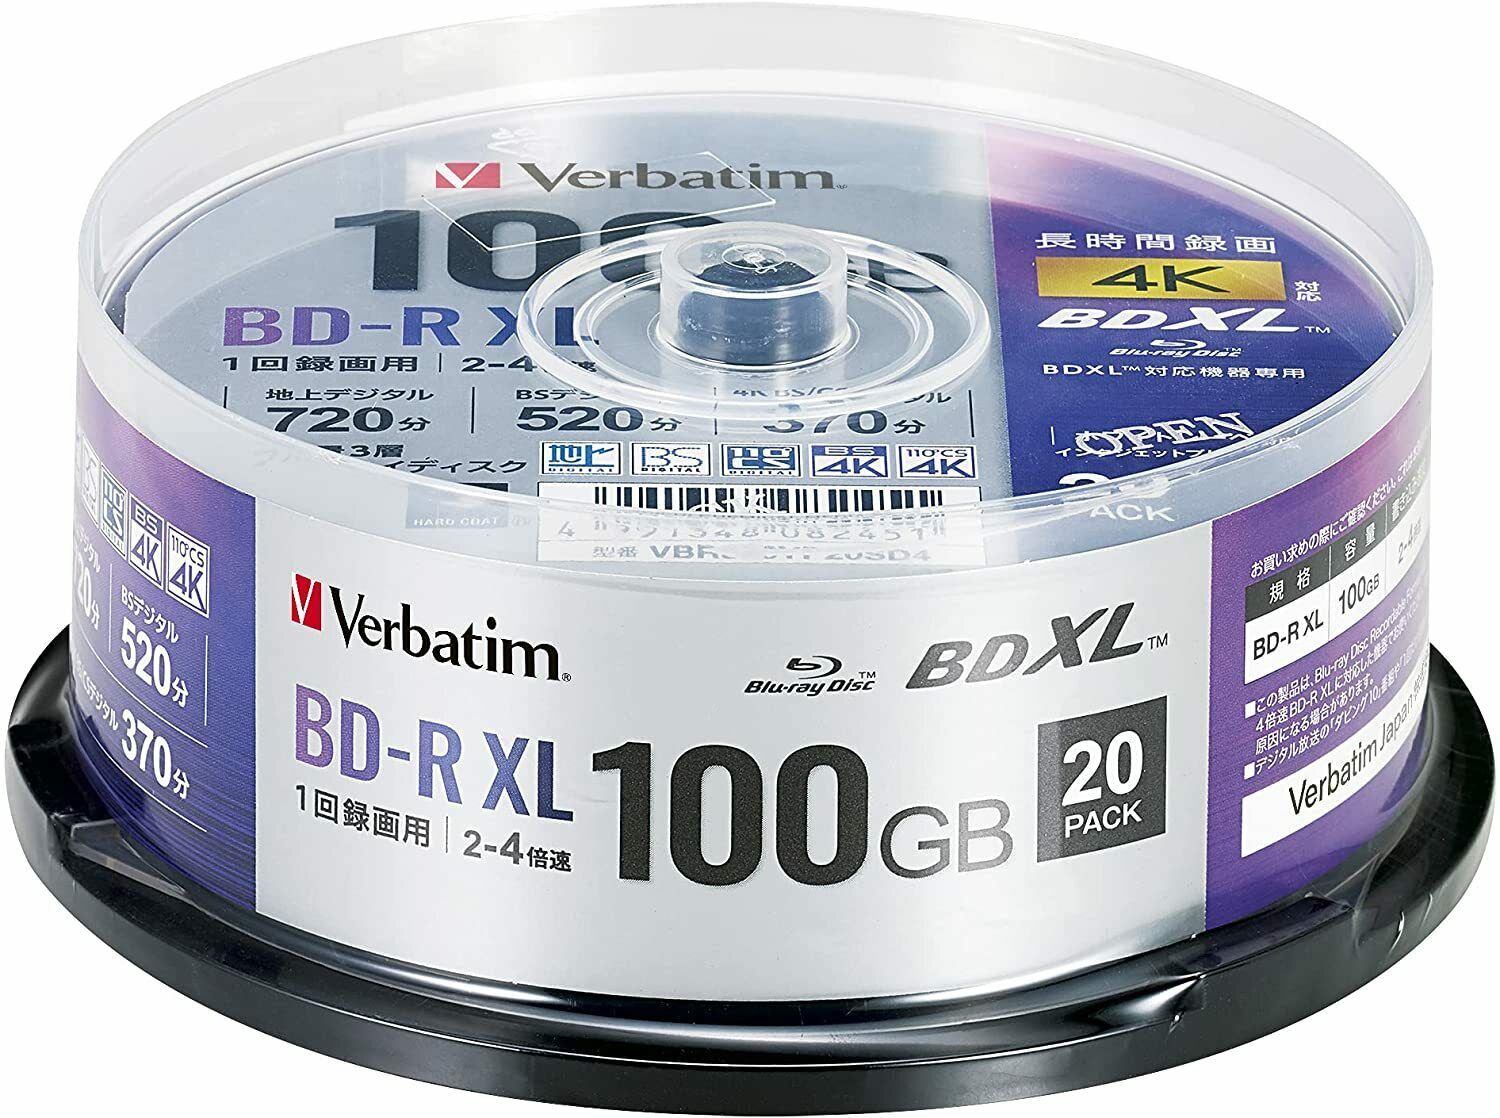 Verbatim 1-Time Recording Blu-ray Disc BD-R XL 100GB 20-Sheet VBR520YP20SD4